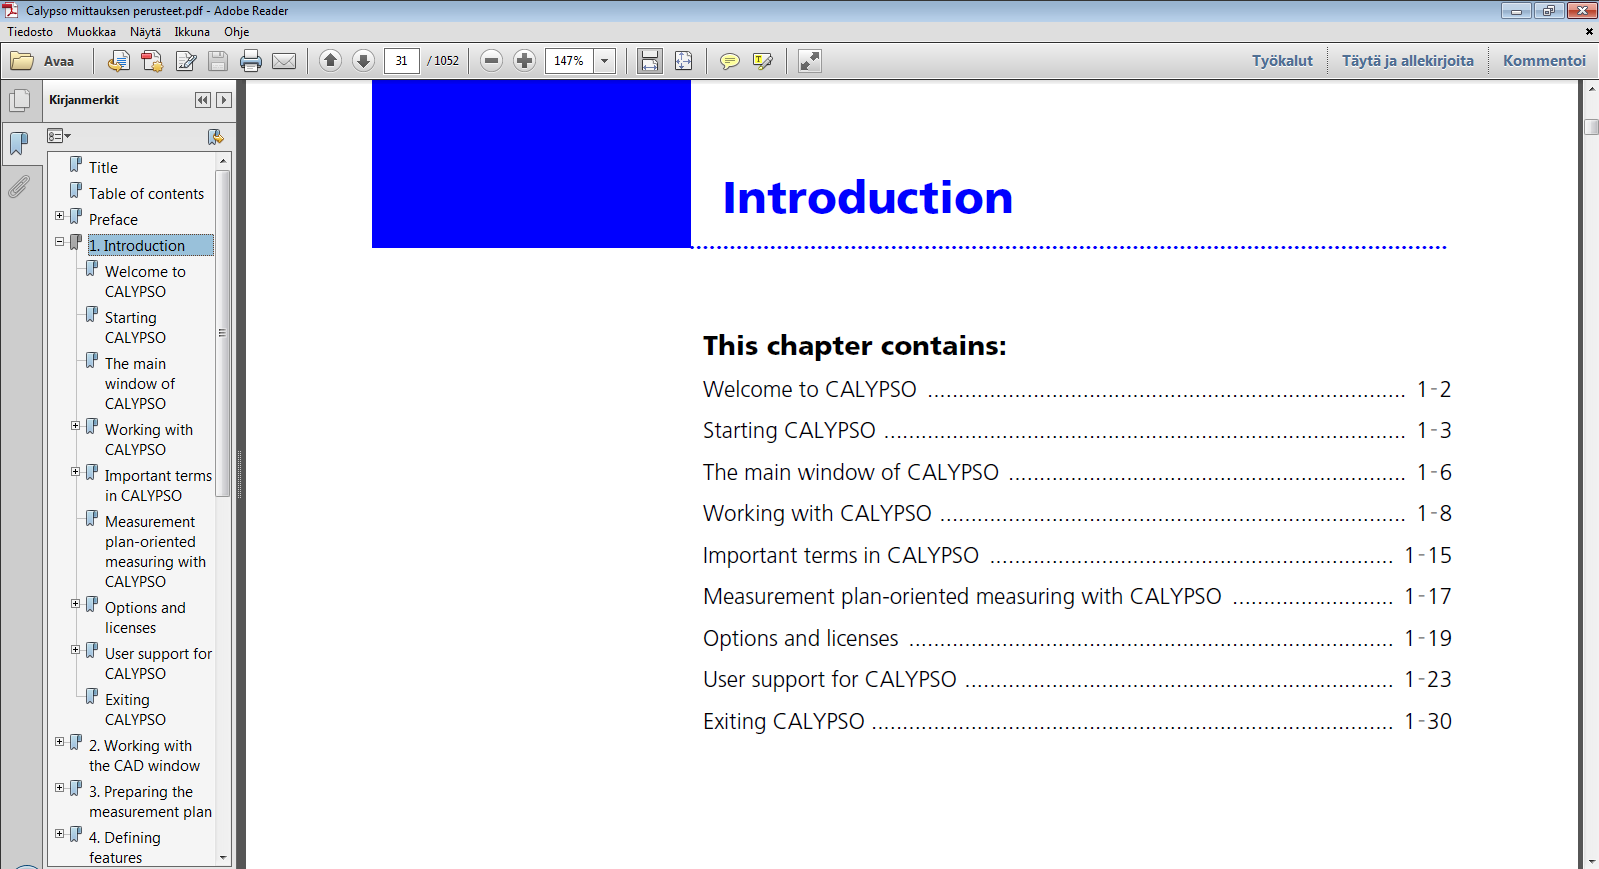 7. CALYPSO MITTAUKSEN PERUSTEET Calypso mittauksen perusteet.pdf dokumentin sisällysluettelo mahdollistaa helpon siirtymisen ohjeessa.